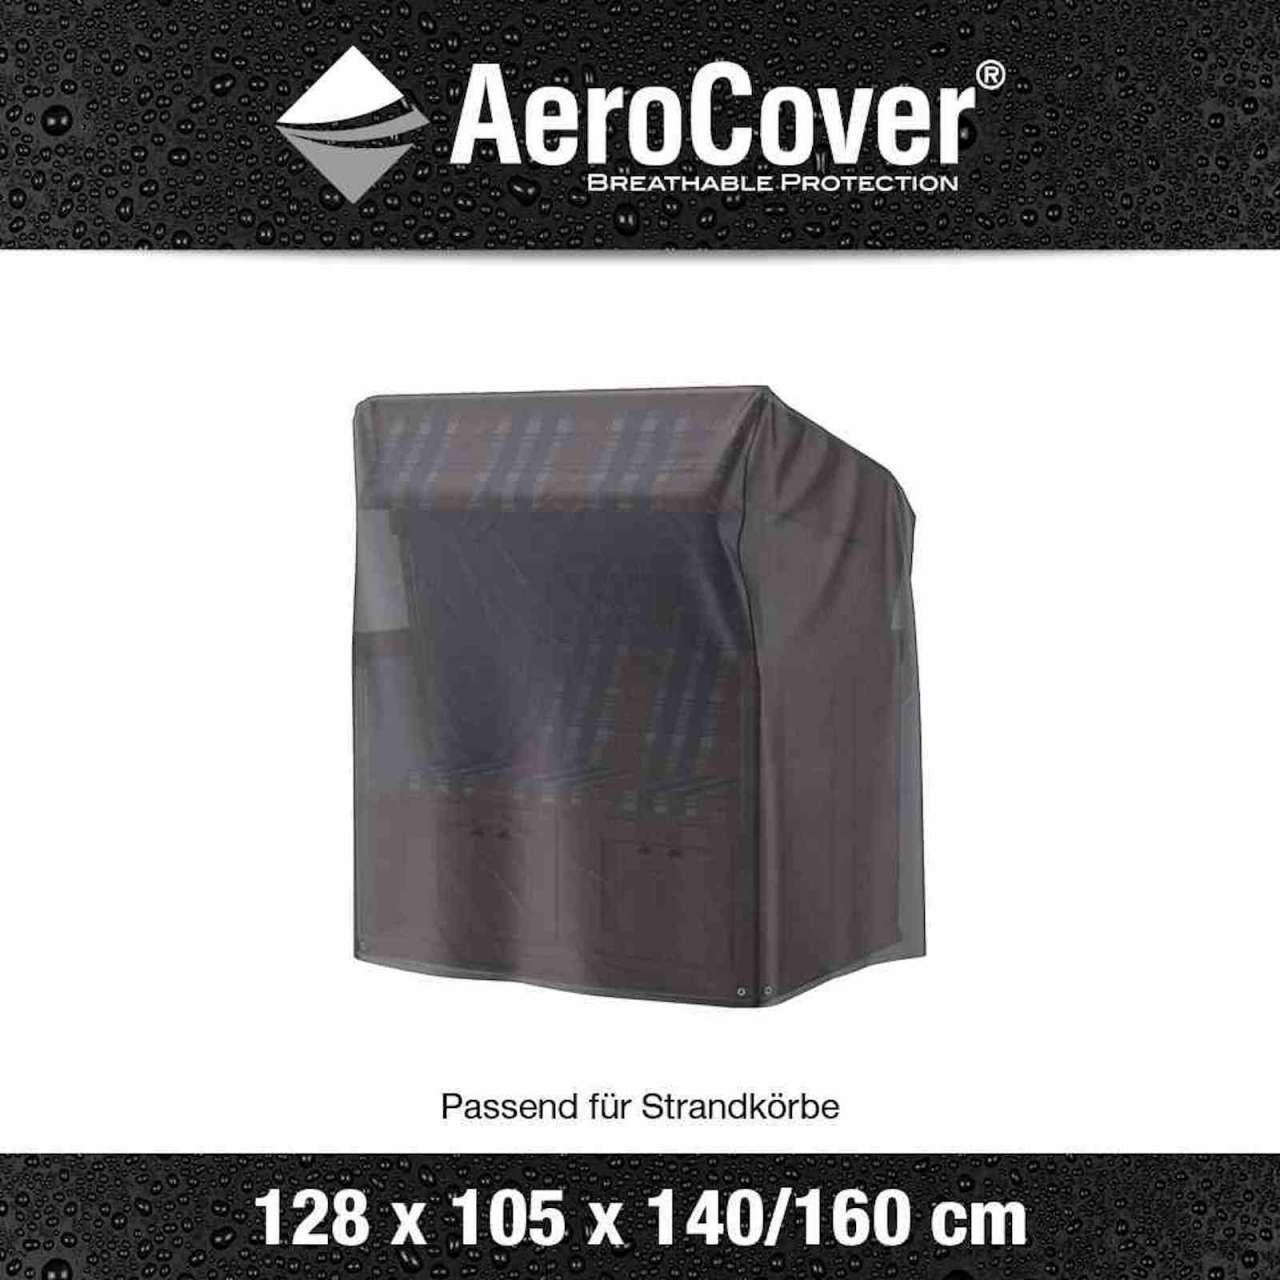 Aerocover Schutzhülle für Strandkorb € 128x105x160/140 64,90 bei ab Preisvergleich cm 